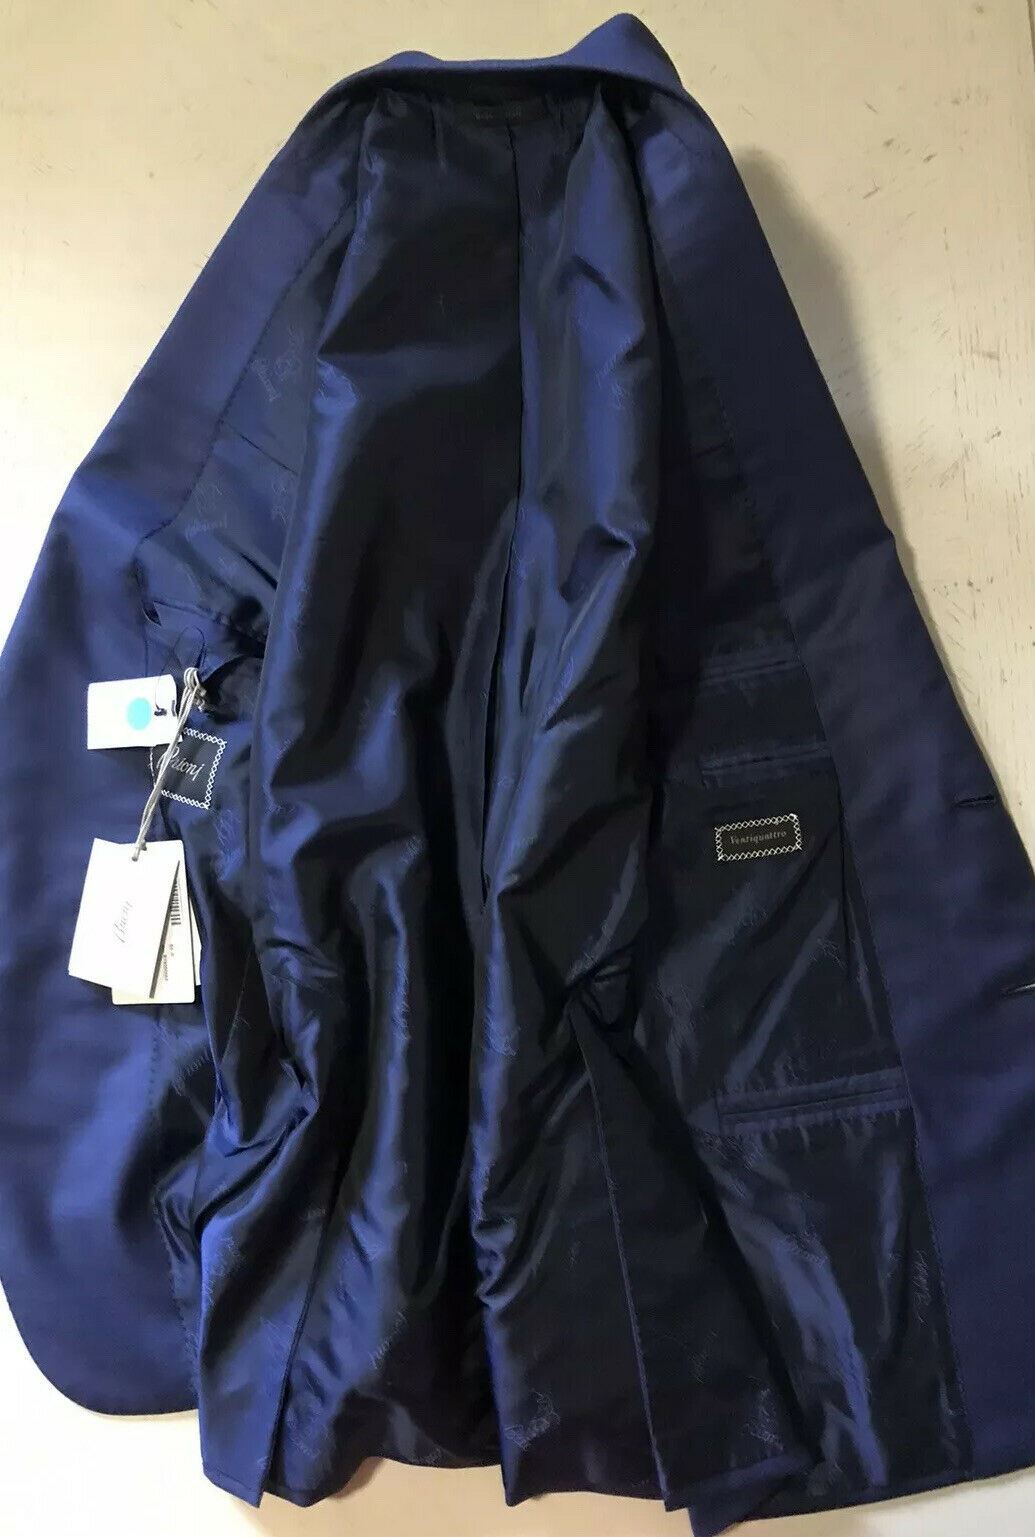 NWT $5700 Brioni Мужское шерстяное спортивное пальто Блейзер Синяя куртка 40R США/50R ЕС Италия